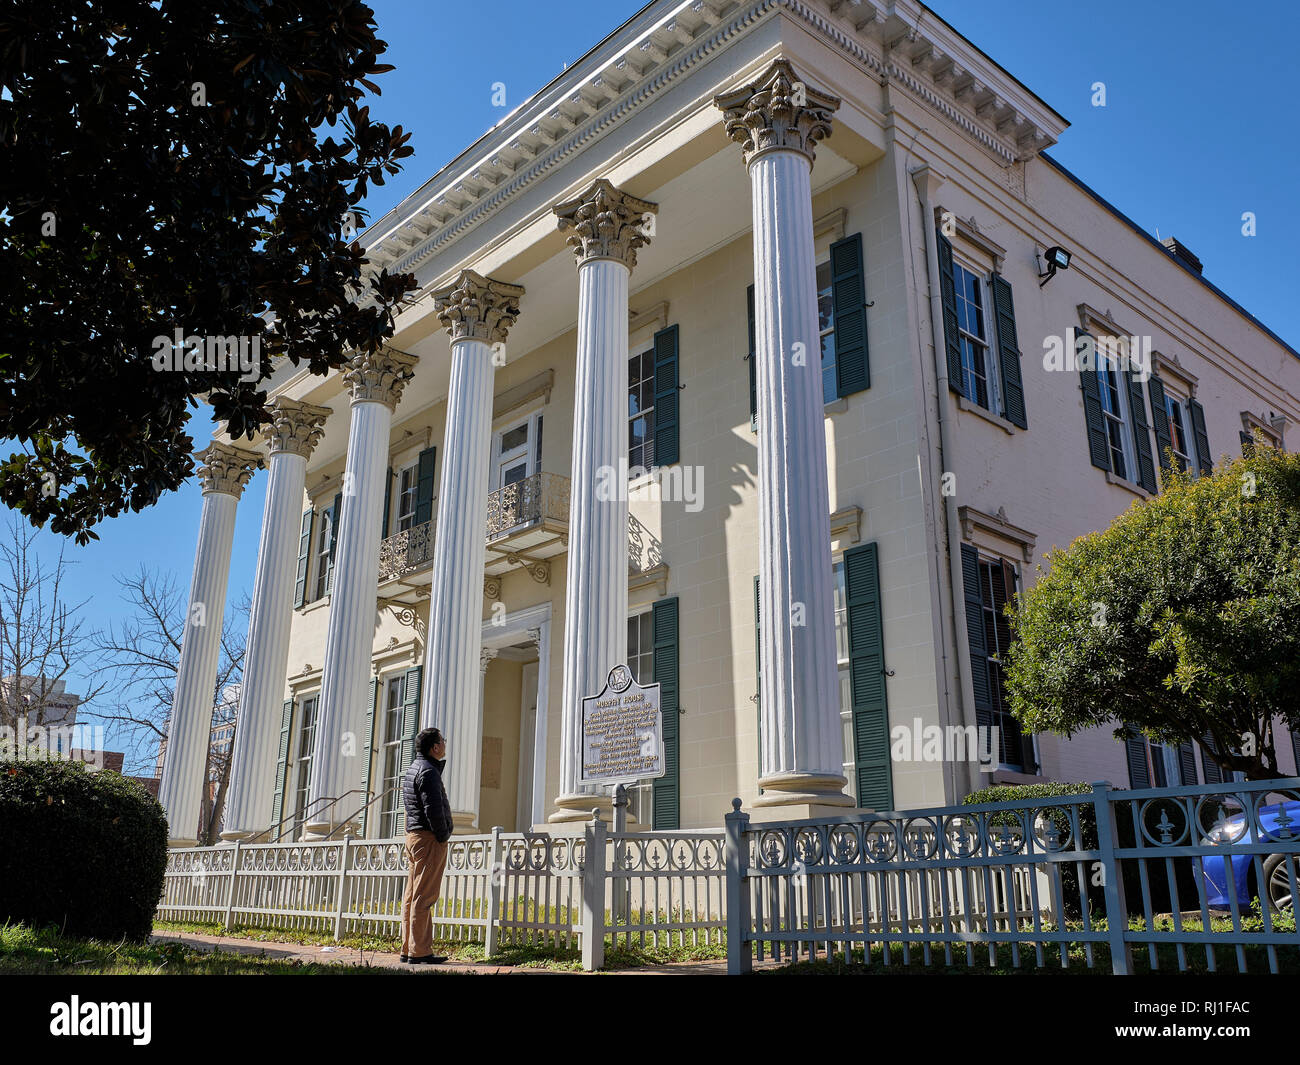 Murphy House, einem griechischen Revival home Bauen im Jahre 1851 ist von einem Touristen in Montgomery Alabama, USA besucht. Stockfoto